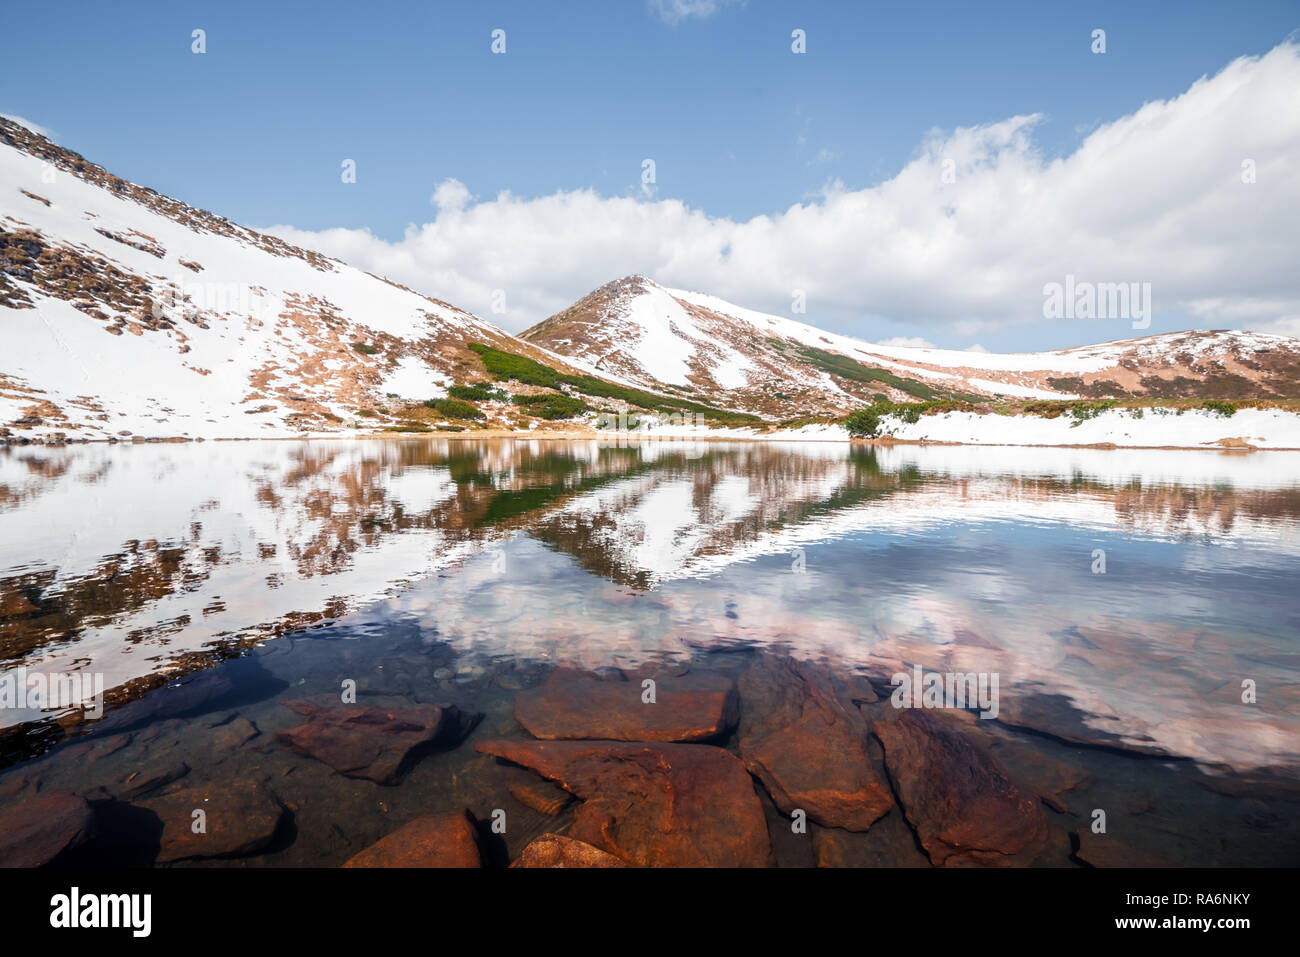 Molla di lago di montagna con acqua limpida e pietre rosse. Il pittoresco paesaggio invernale con colline innevate sotto un cielo blu Foto Stock